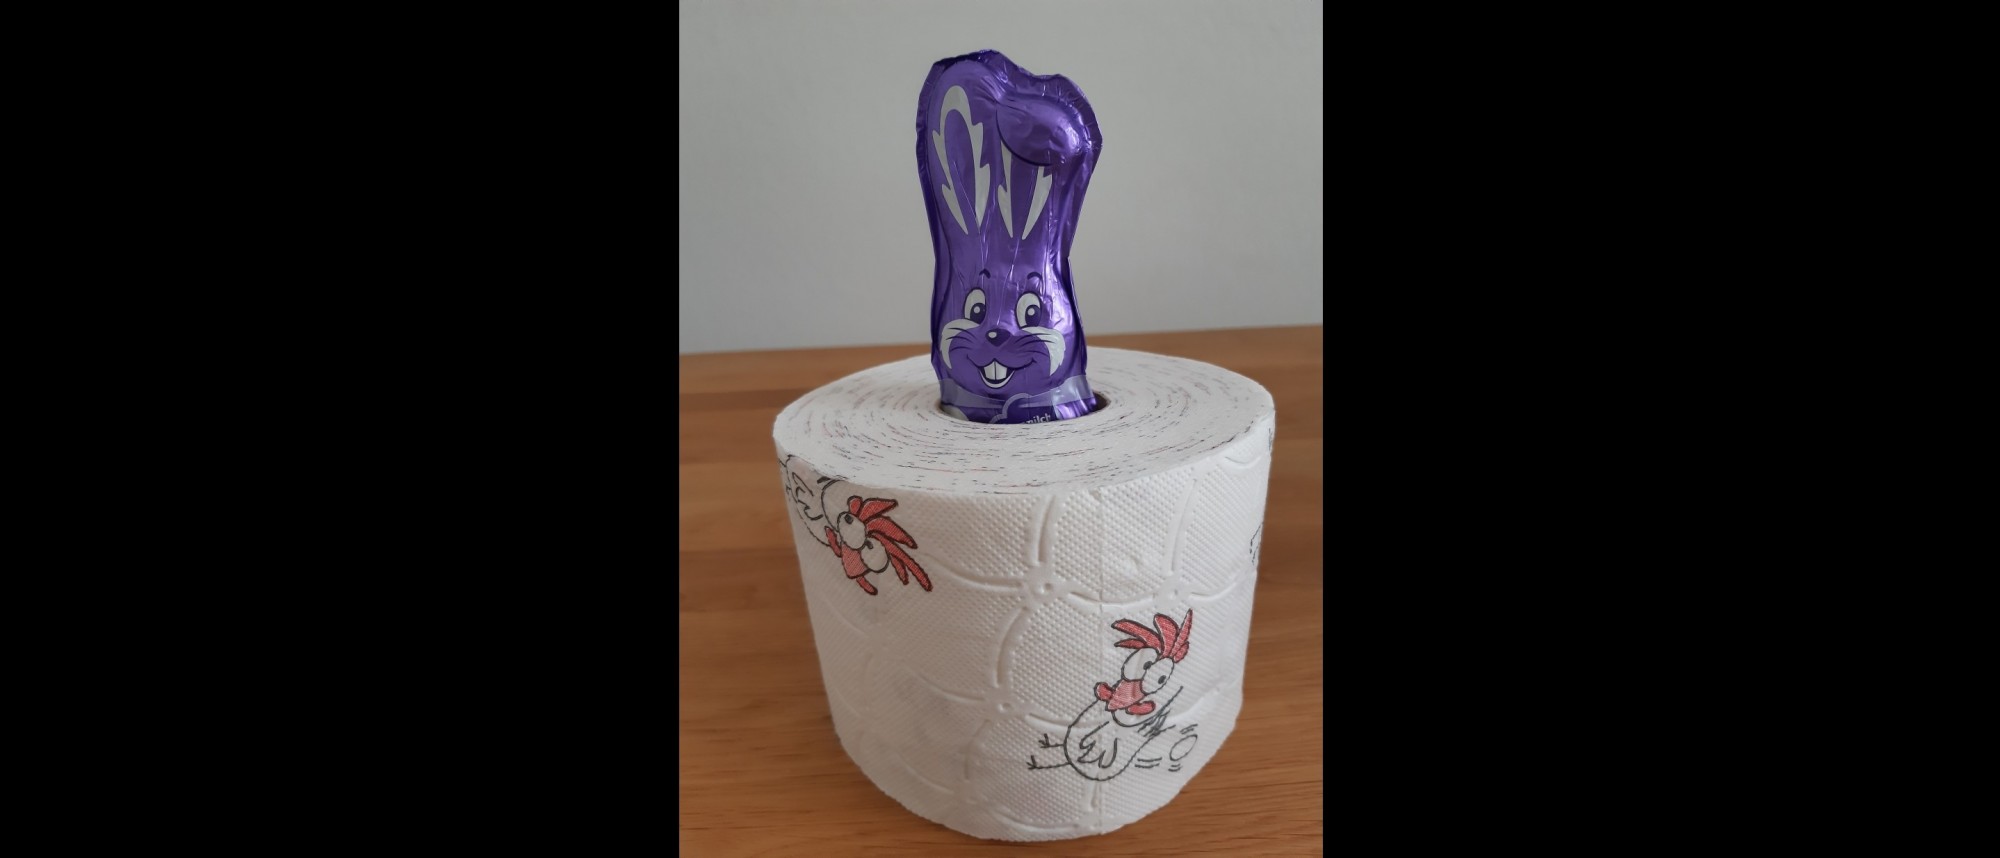 Ein lila Milka-Schokohase in einer Rolle Toilettenpapier.